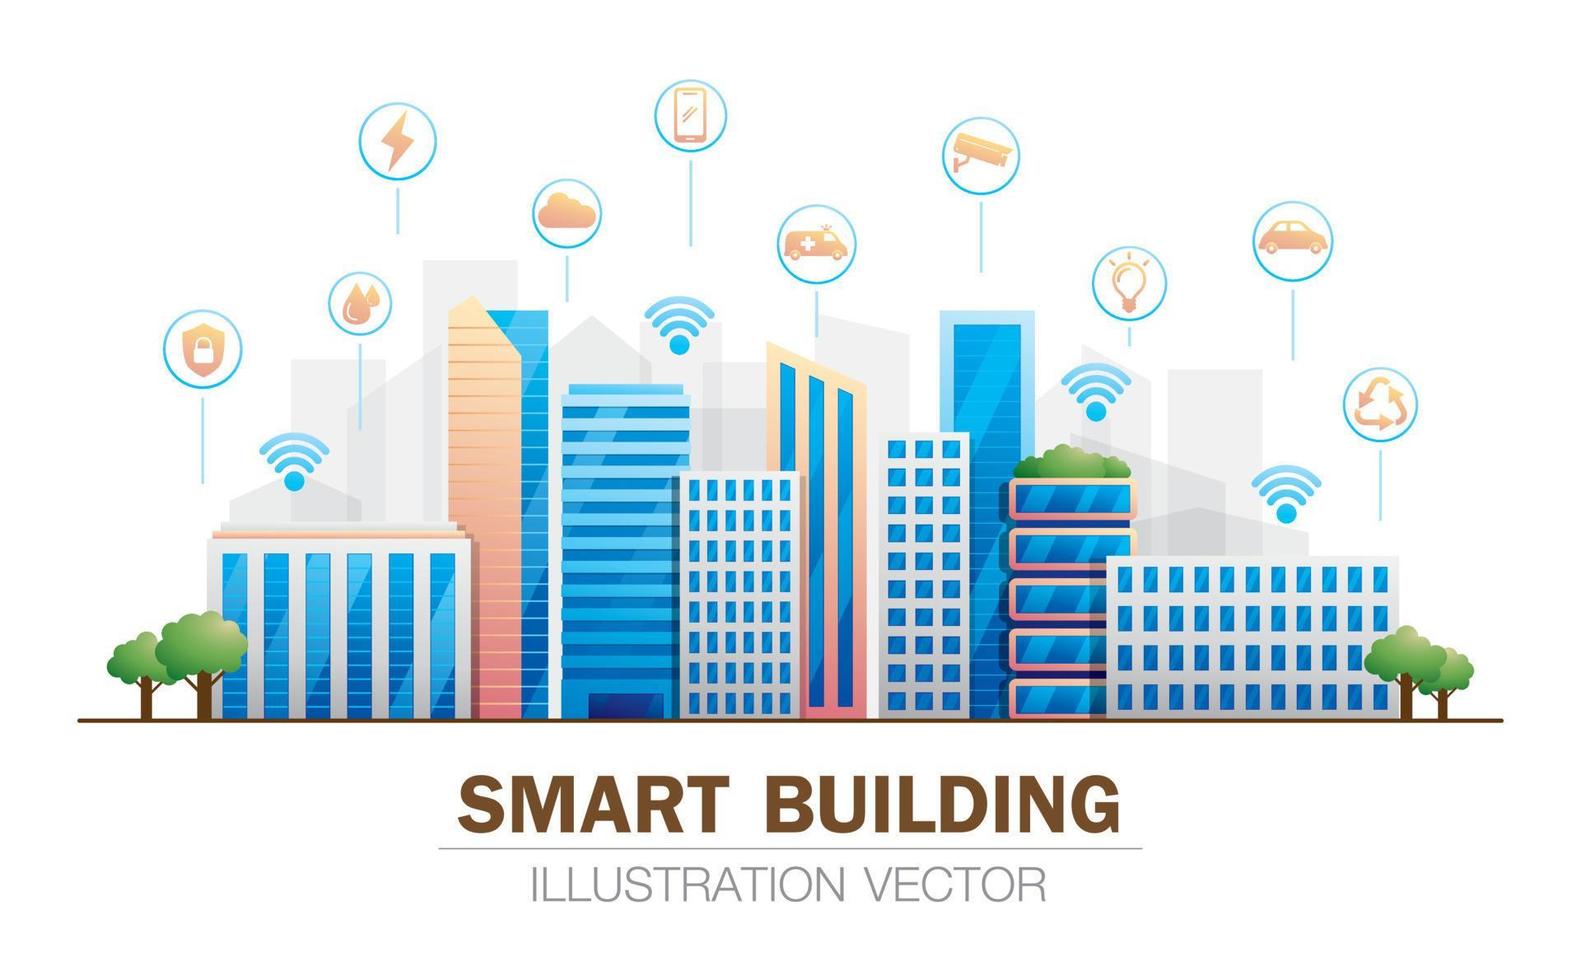 vecteur d'illustration de bâtiments intelligents avec des icônes de service intelligent.